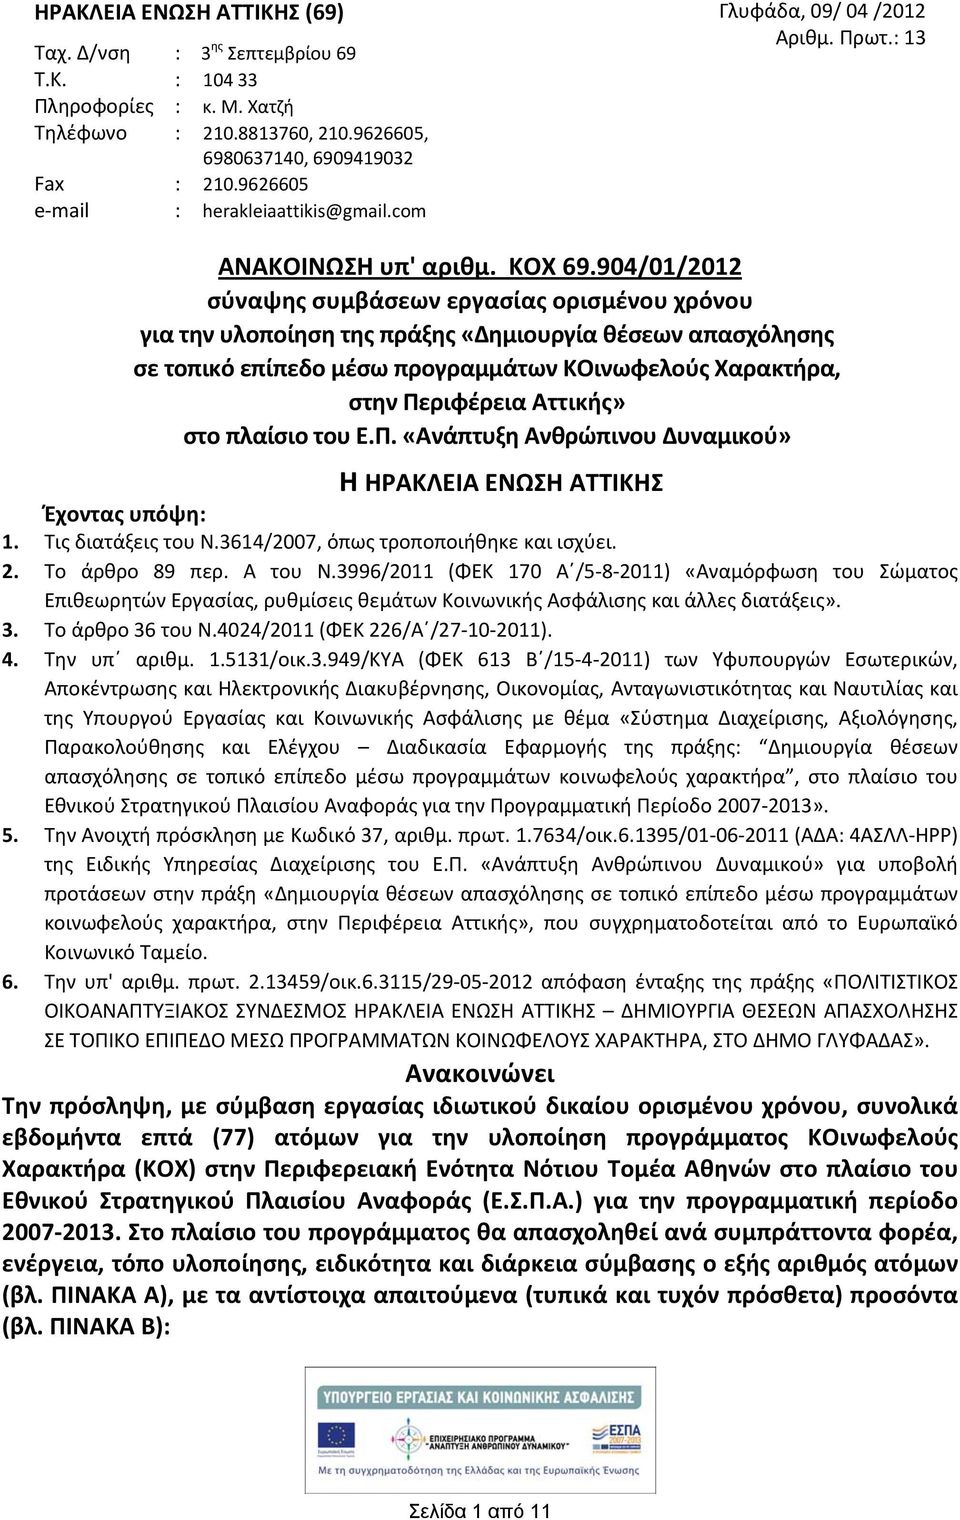 904/01/2012 σύναψης συμβάσεων εργασίας ορισμένου χρόνου για την υλοποίηση της πράξης «Δημιουργία θέσεων απασχόλησης σε τοπικό επίπεδο μέσω προγραμμάτων ΚΟινωφελούς Χαρακτήρα, στην Περιφέρεια Αττικής»